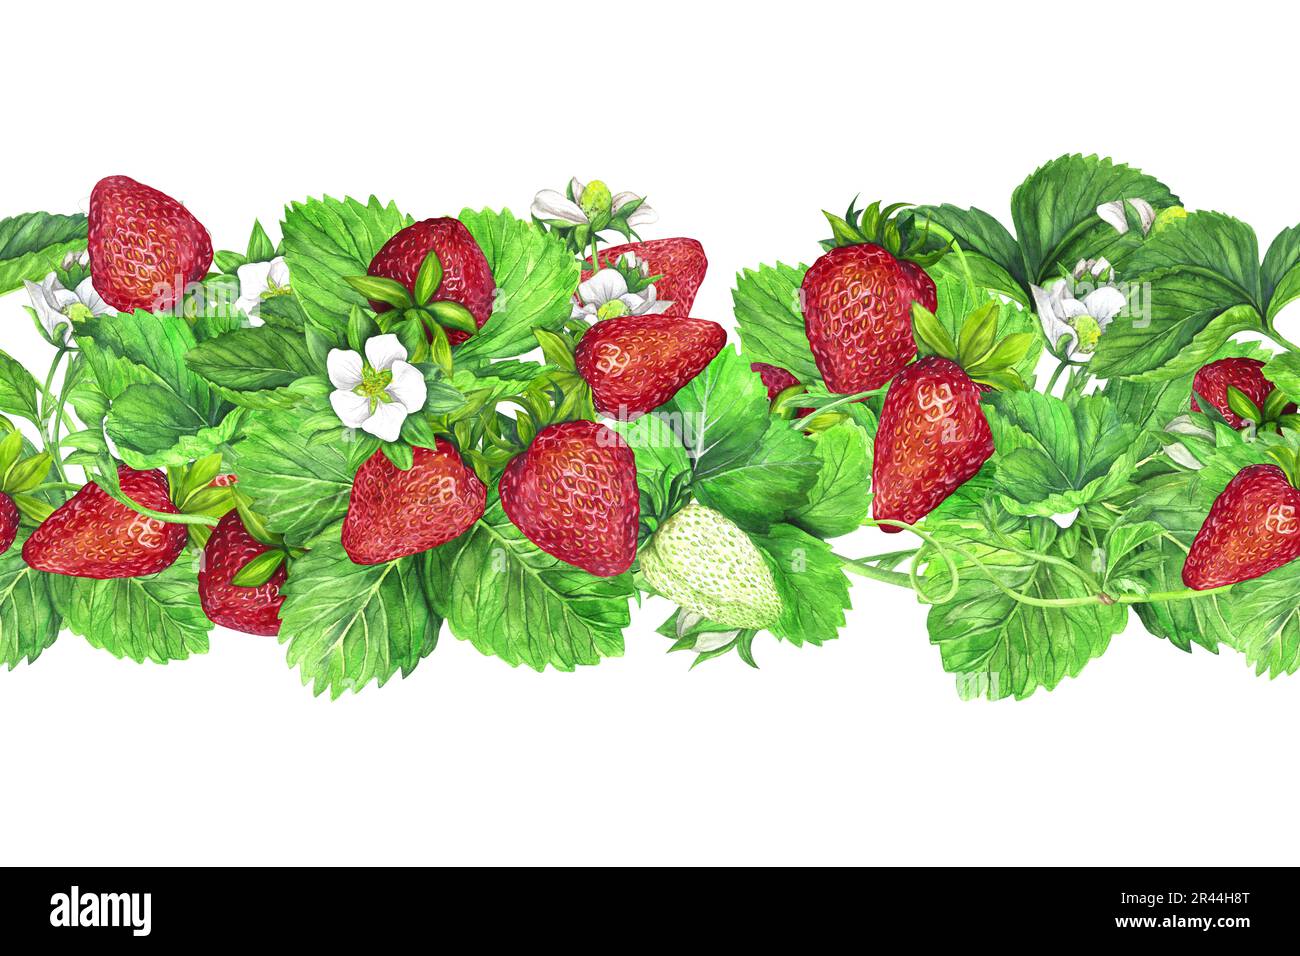 Bordure sans couture des buissons de fraises mûres avec des feuilles vertes et des fleurs blanches. Illustration aquarelle isolée sur fond blanc. L'application Banque D'Images